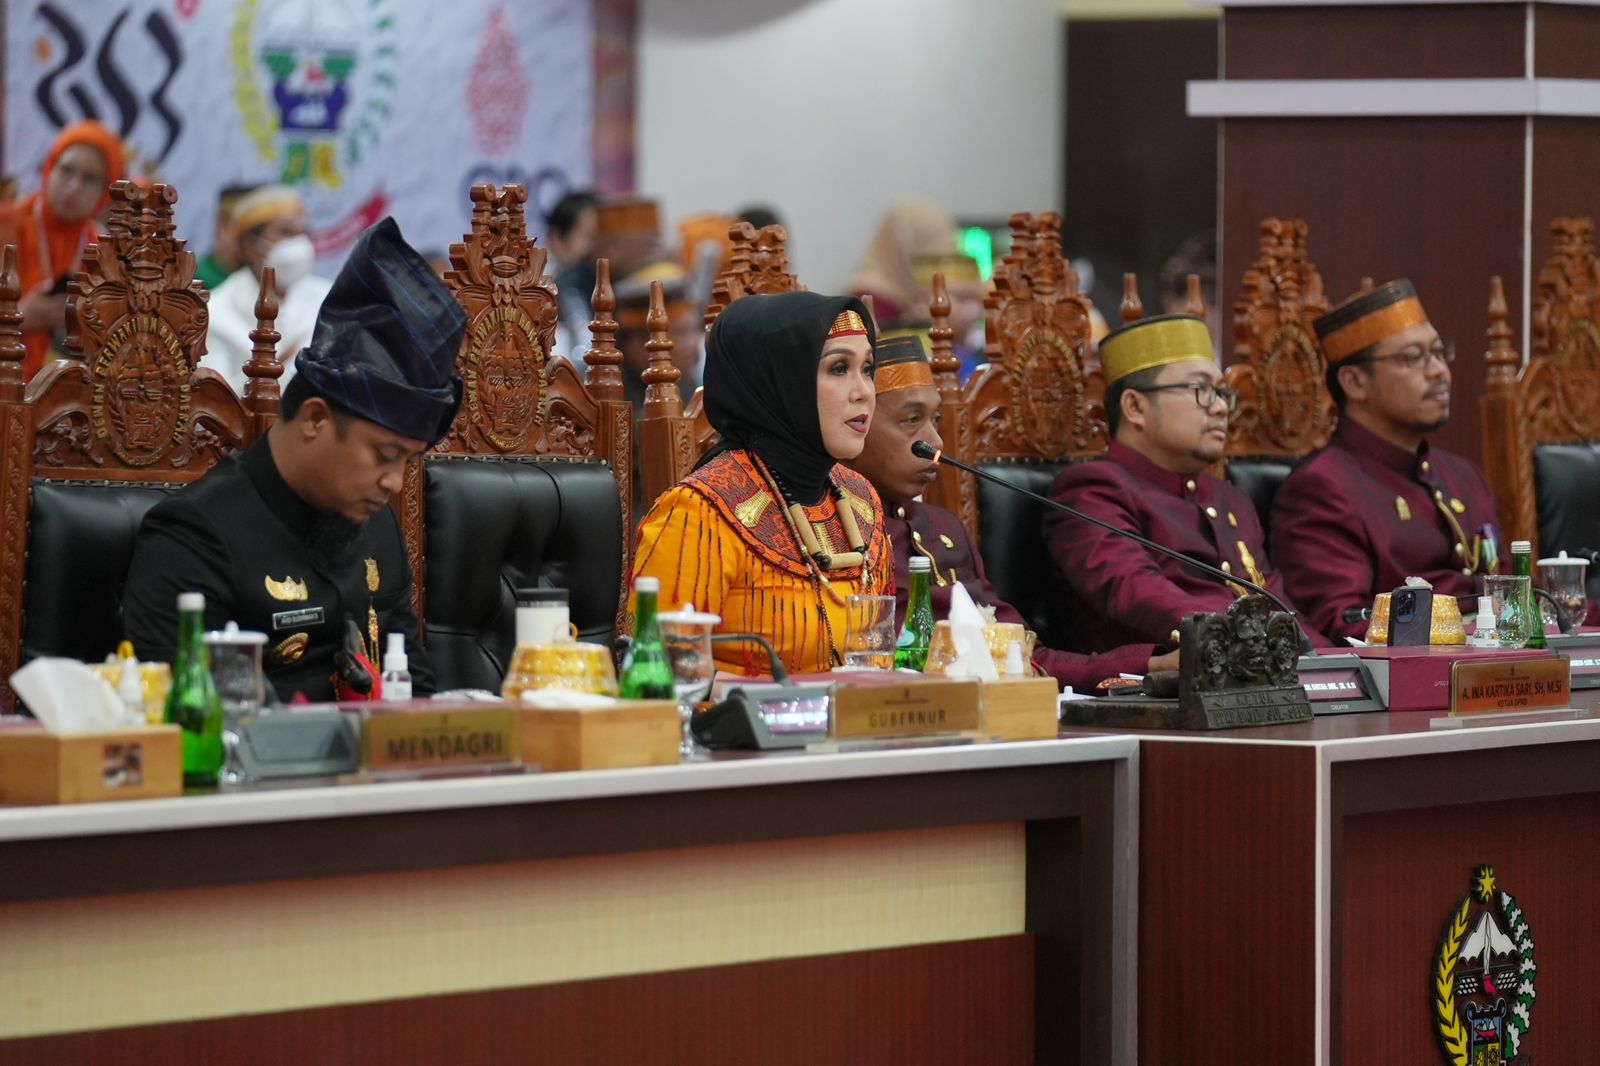 Ketua DPRD Sulsel Puji Pertumbuhan Ekonomi di Era Gubernur Andi Sudirman Sulaiman